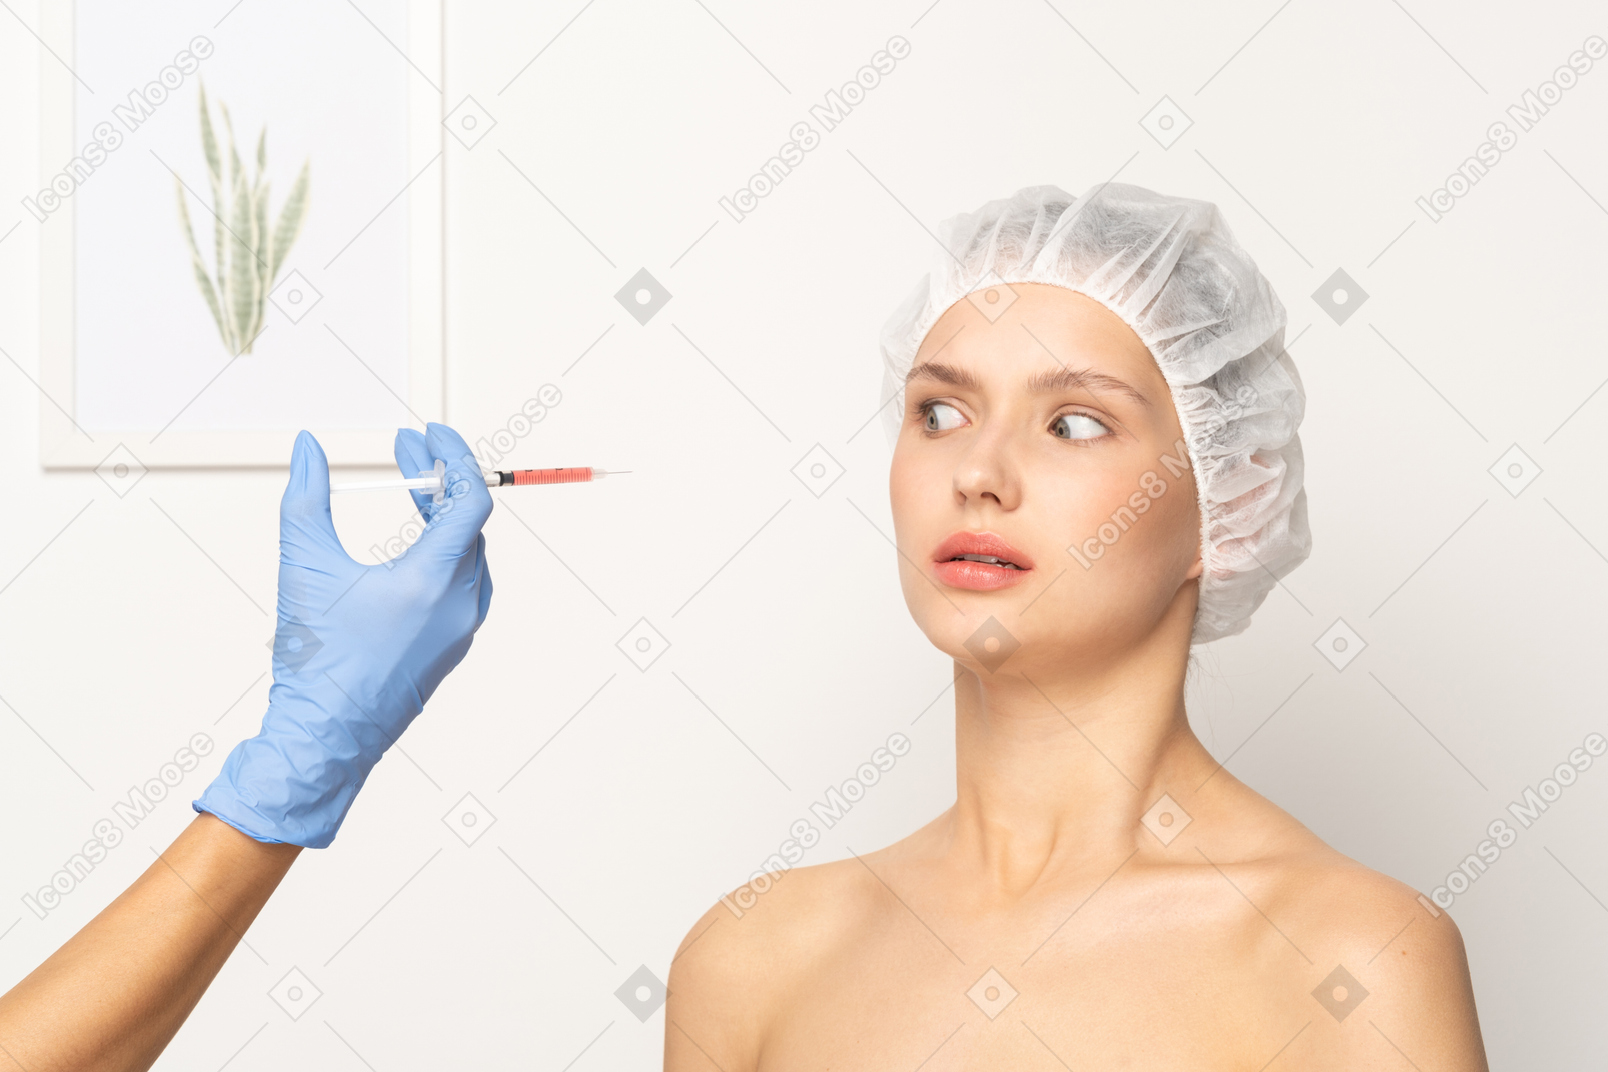 顔の注射を受けることを恐れているように見える女性